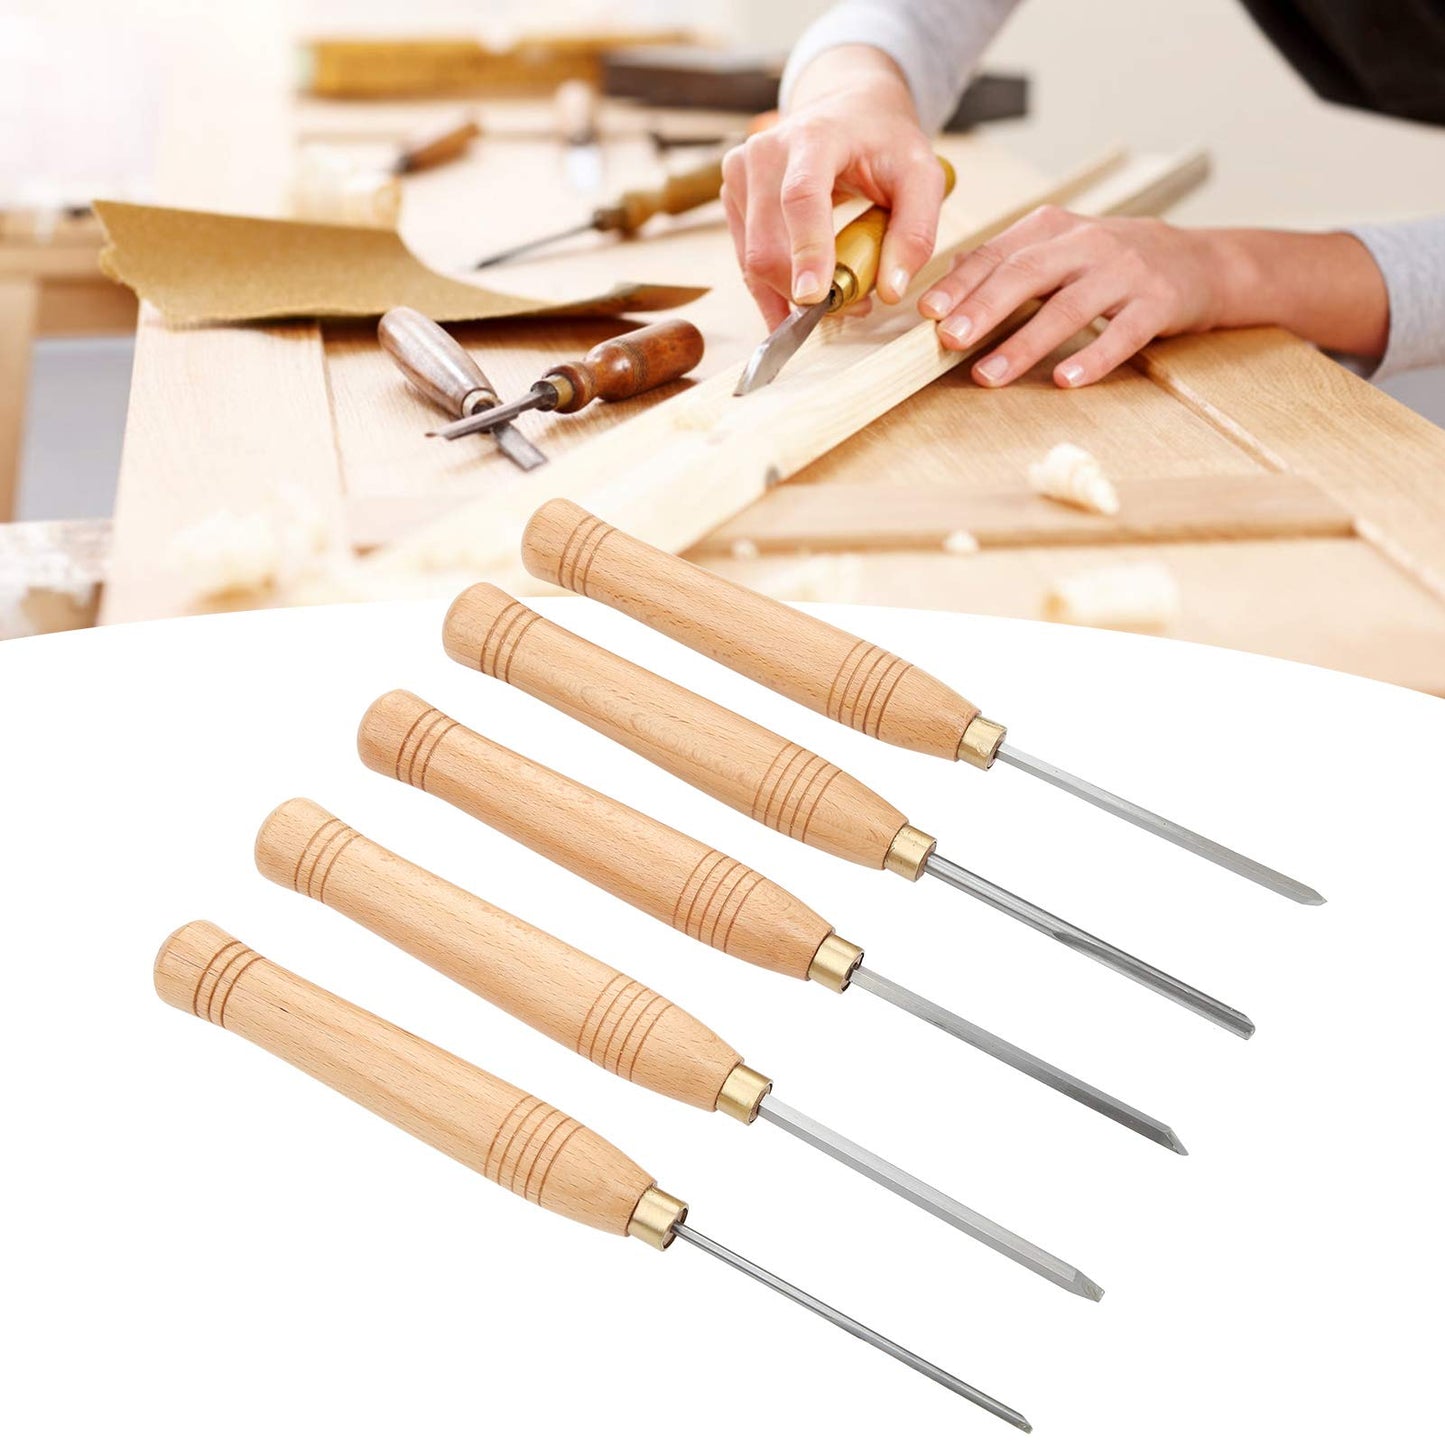 Wood Lathe Tools,Lathe Tools,Wood Turning Tools for Lathe,chisel set,5 Pcs,Chisels,Lathe Tools,Wood Turning Tools for Lathe,Wood Lathe Tools